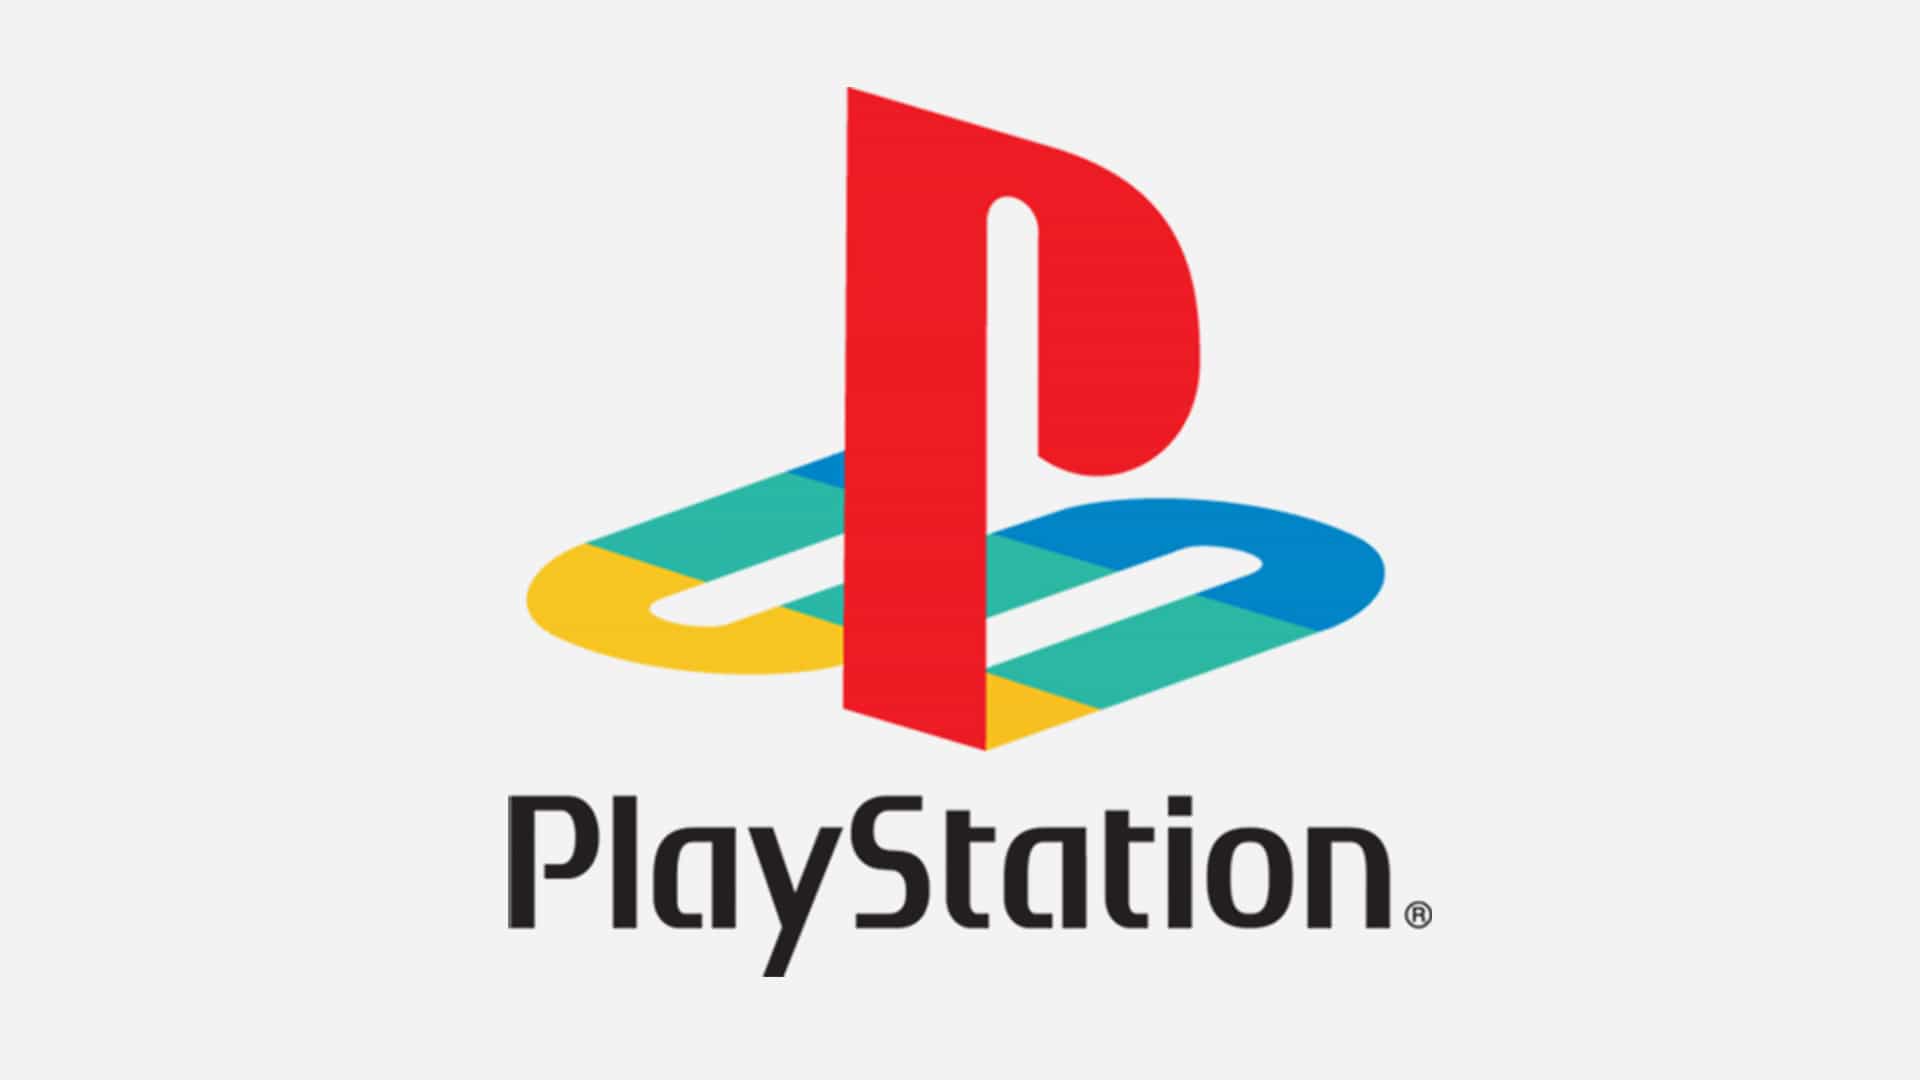 El logo de PlayStation desde atrás es la imagen más maldita en línea